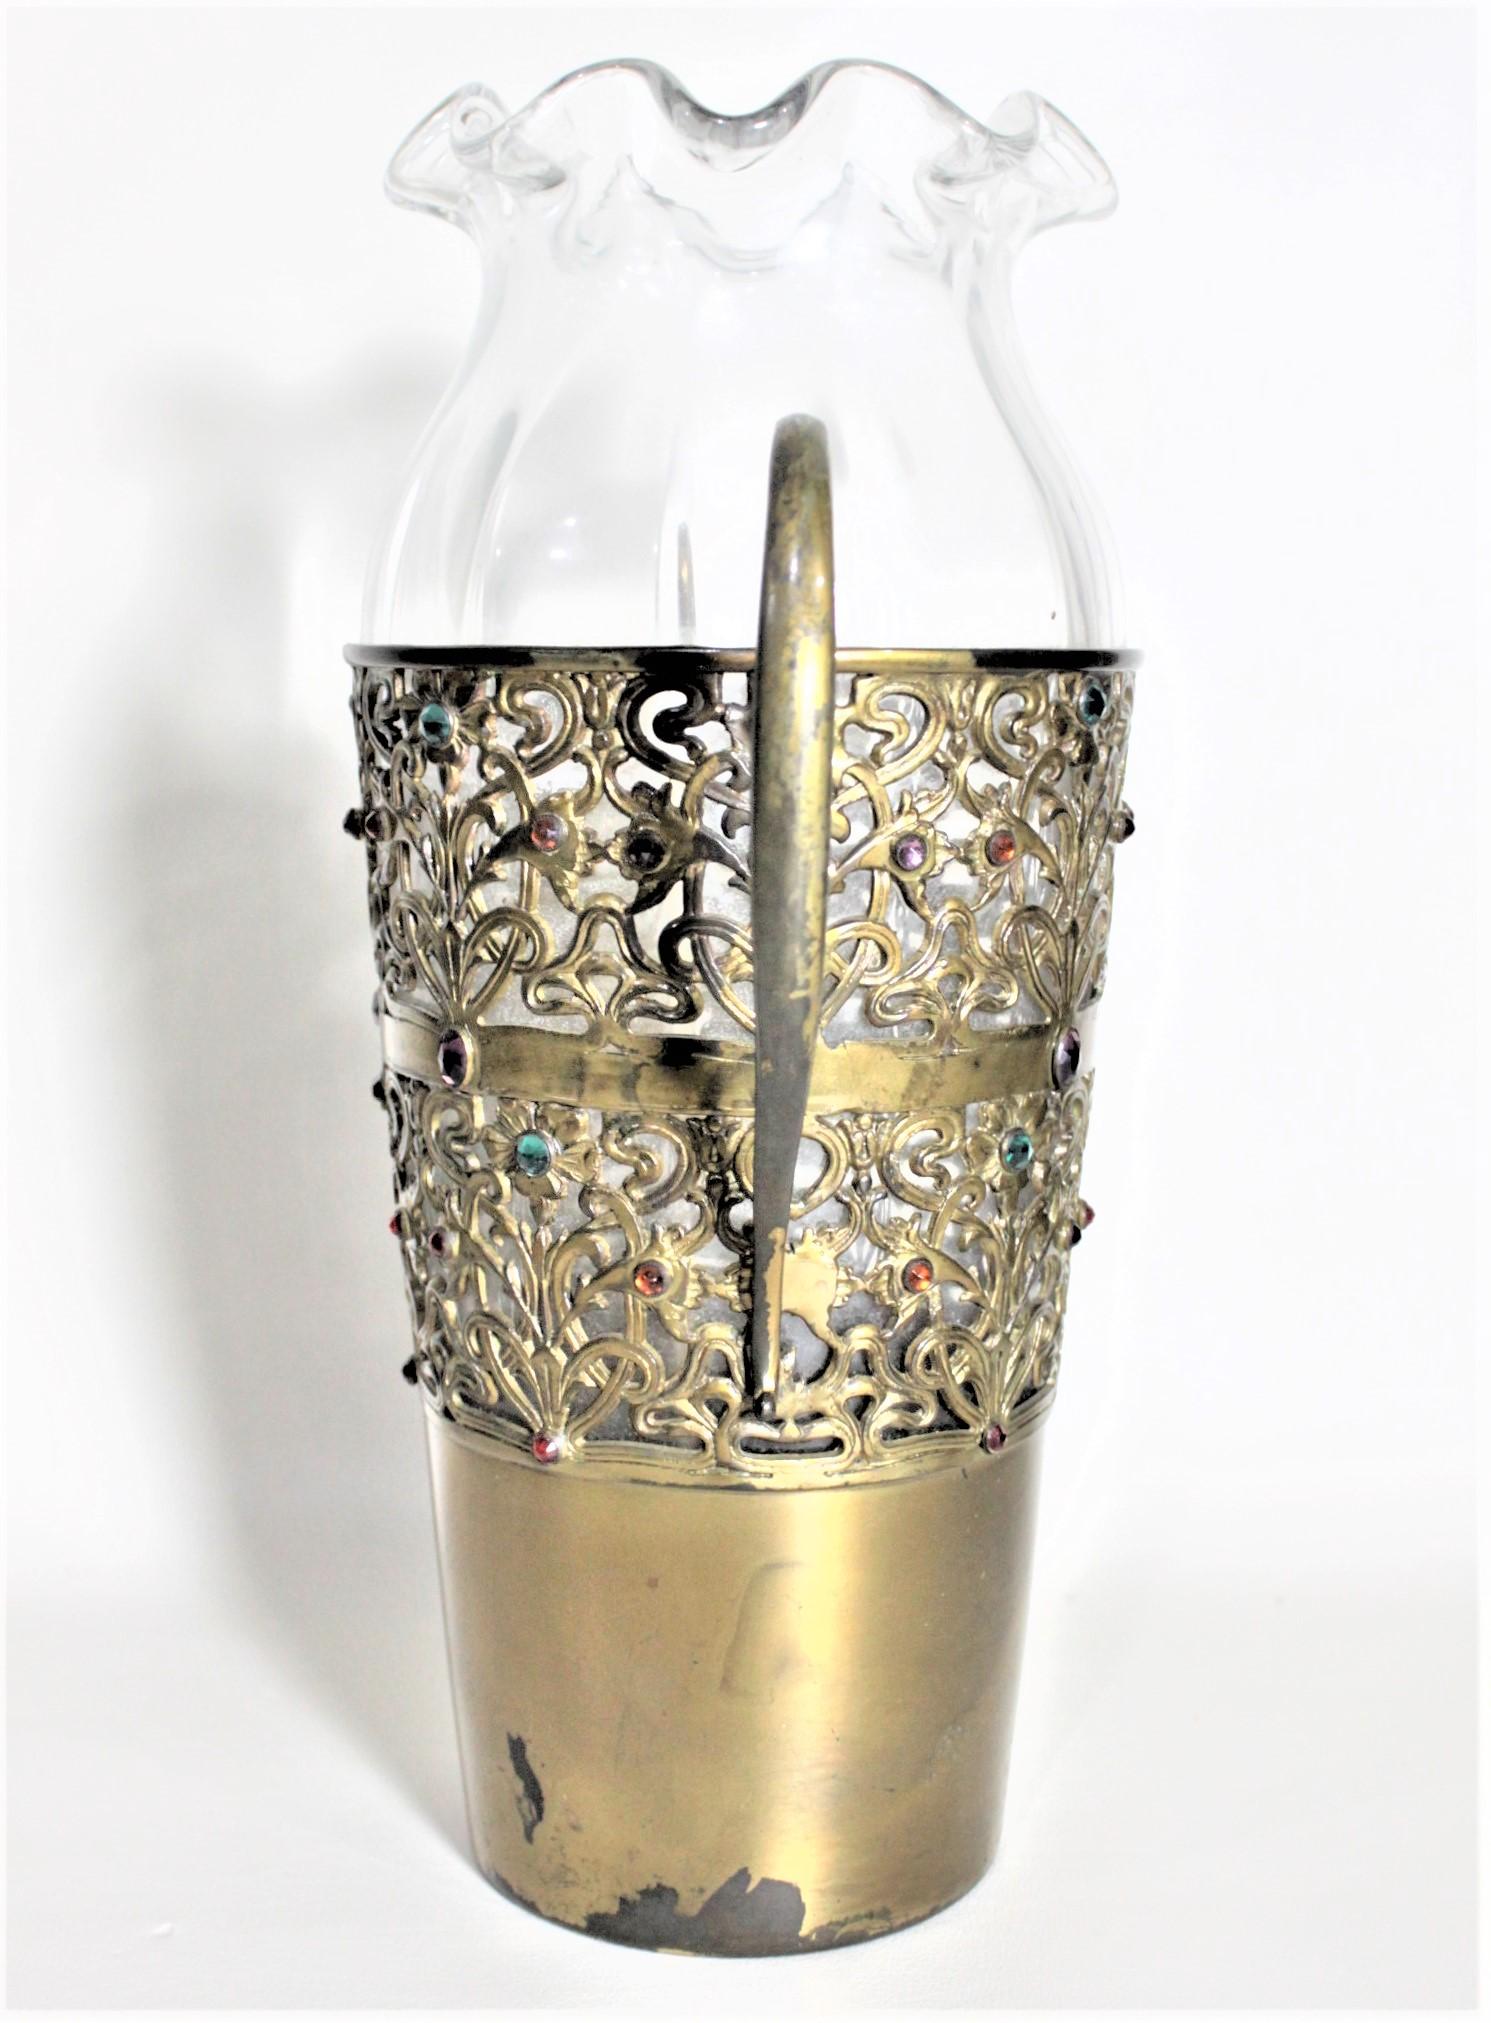 Ce grand vase en verre ancien a été fabriqué par l'Apollo Silver Co. de New York vers 1870 dans le style victorien. Le vase transparent est serti dans une monture en métal filigrané patiné laiton avec des bijoux incrustés en verre multicolore. Le